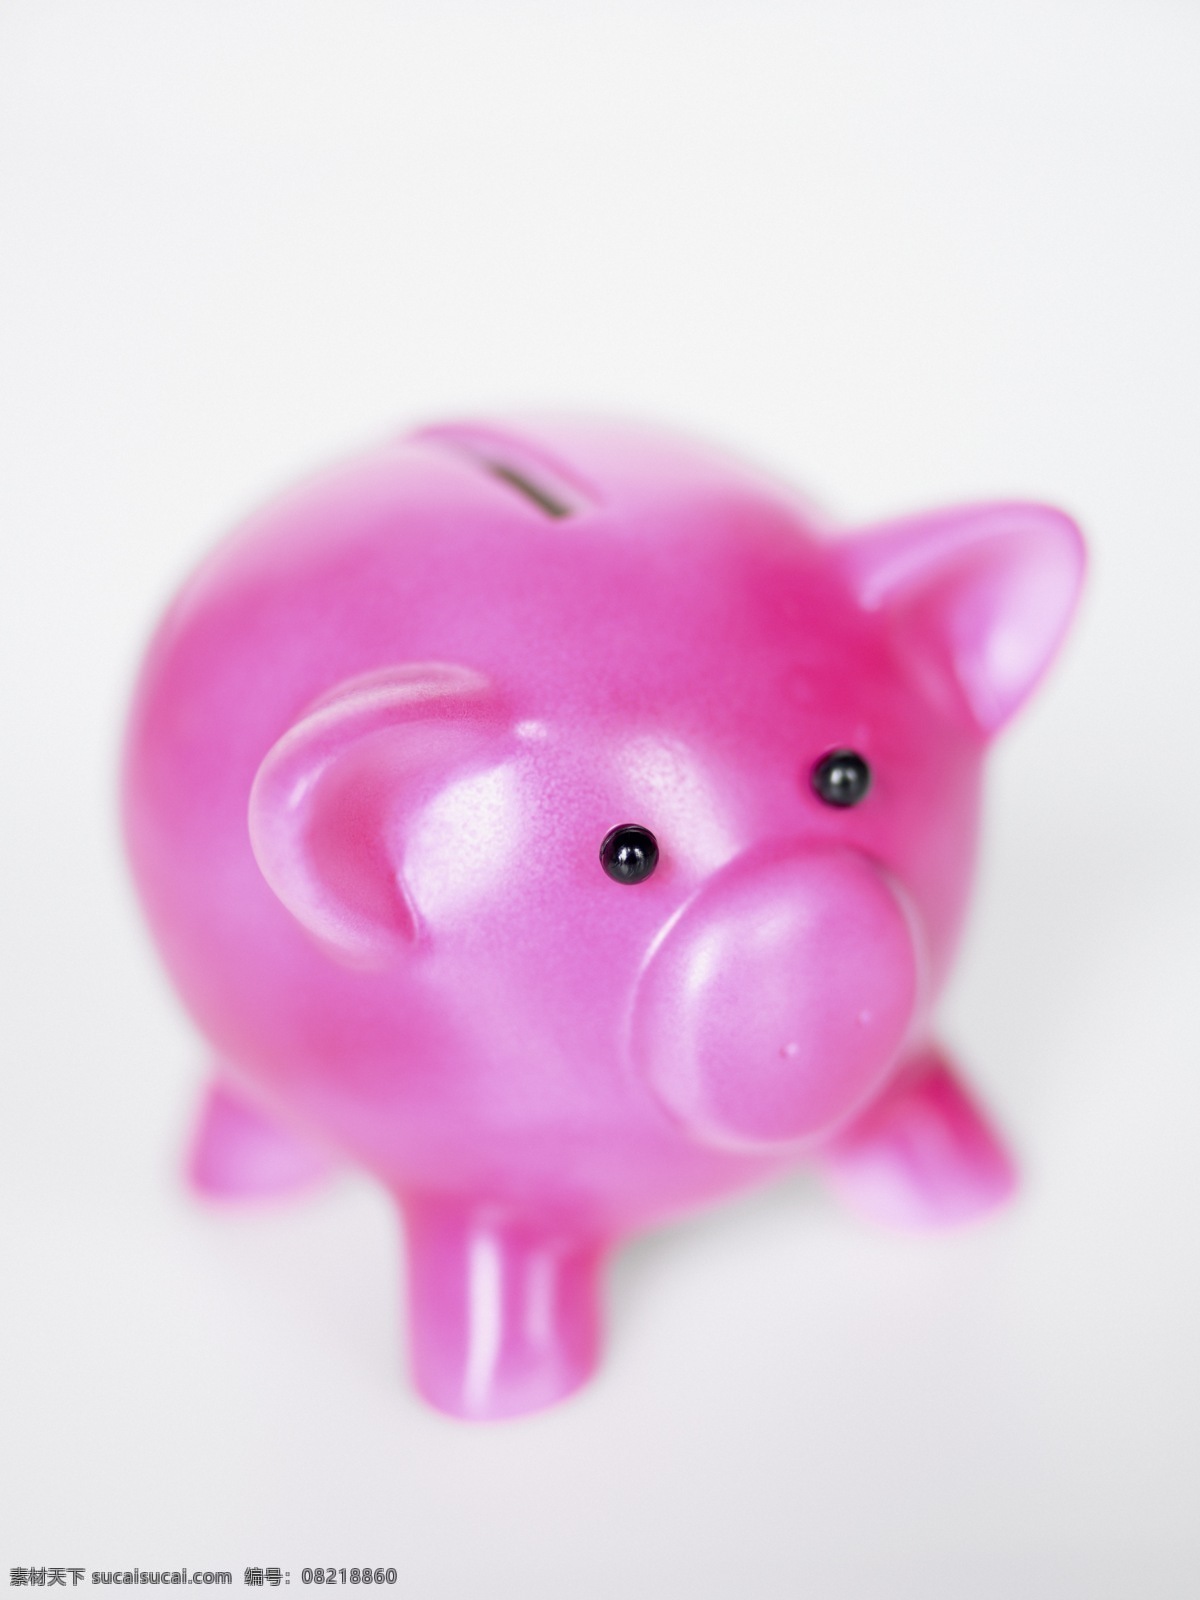 粉红色 小 猪 储蓄罐 小猪储蓄罐 储存 金钱 货币 金融交易 金融元素 金融主题 金融货币 商务金融